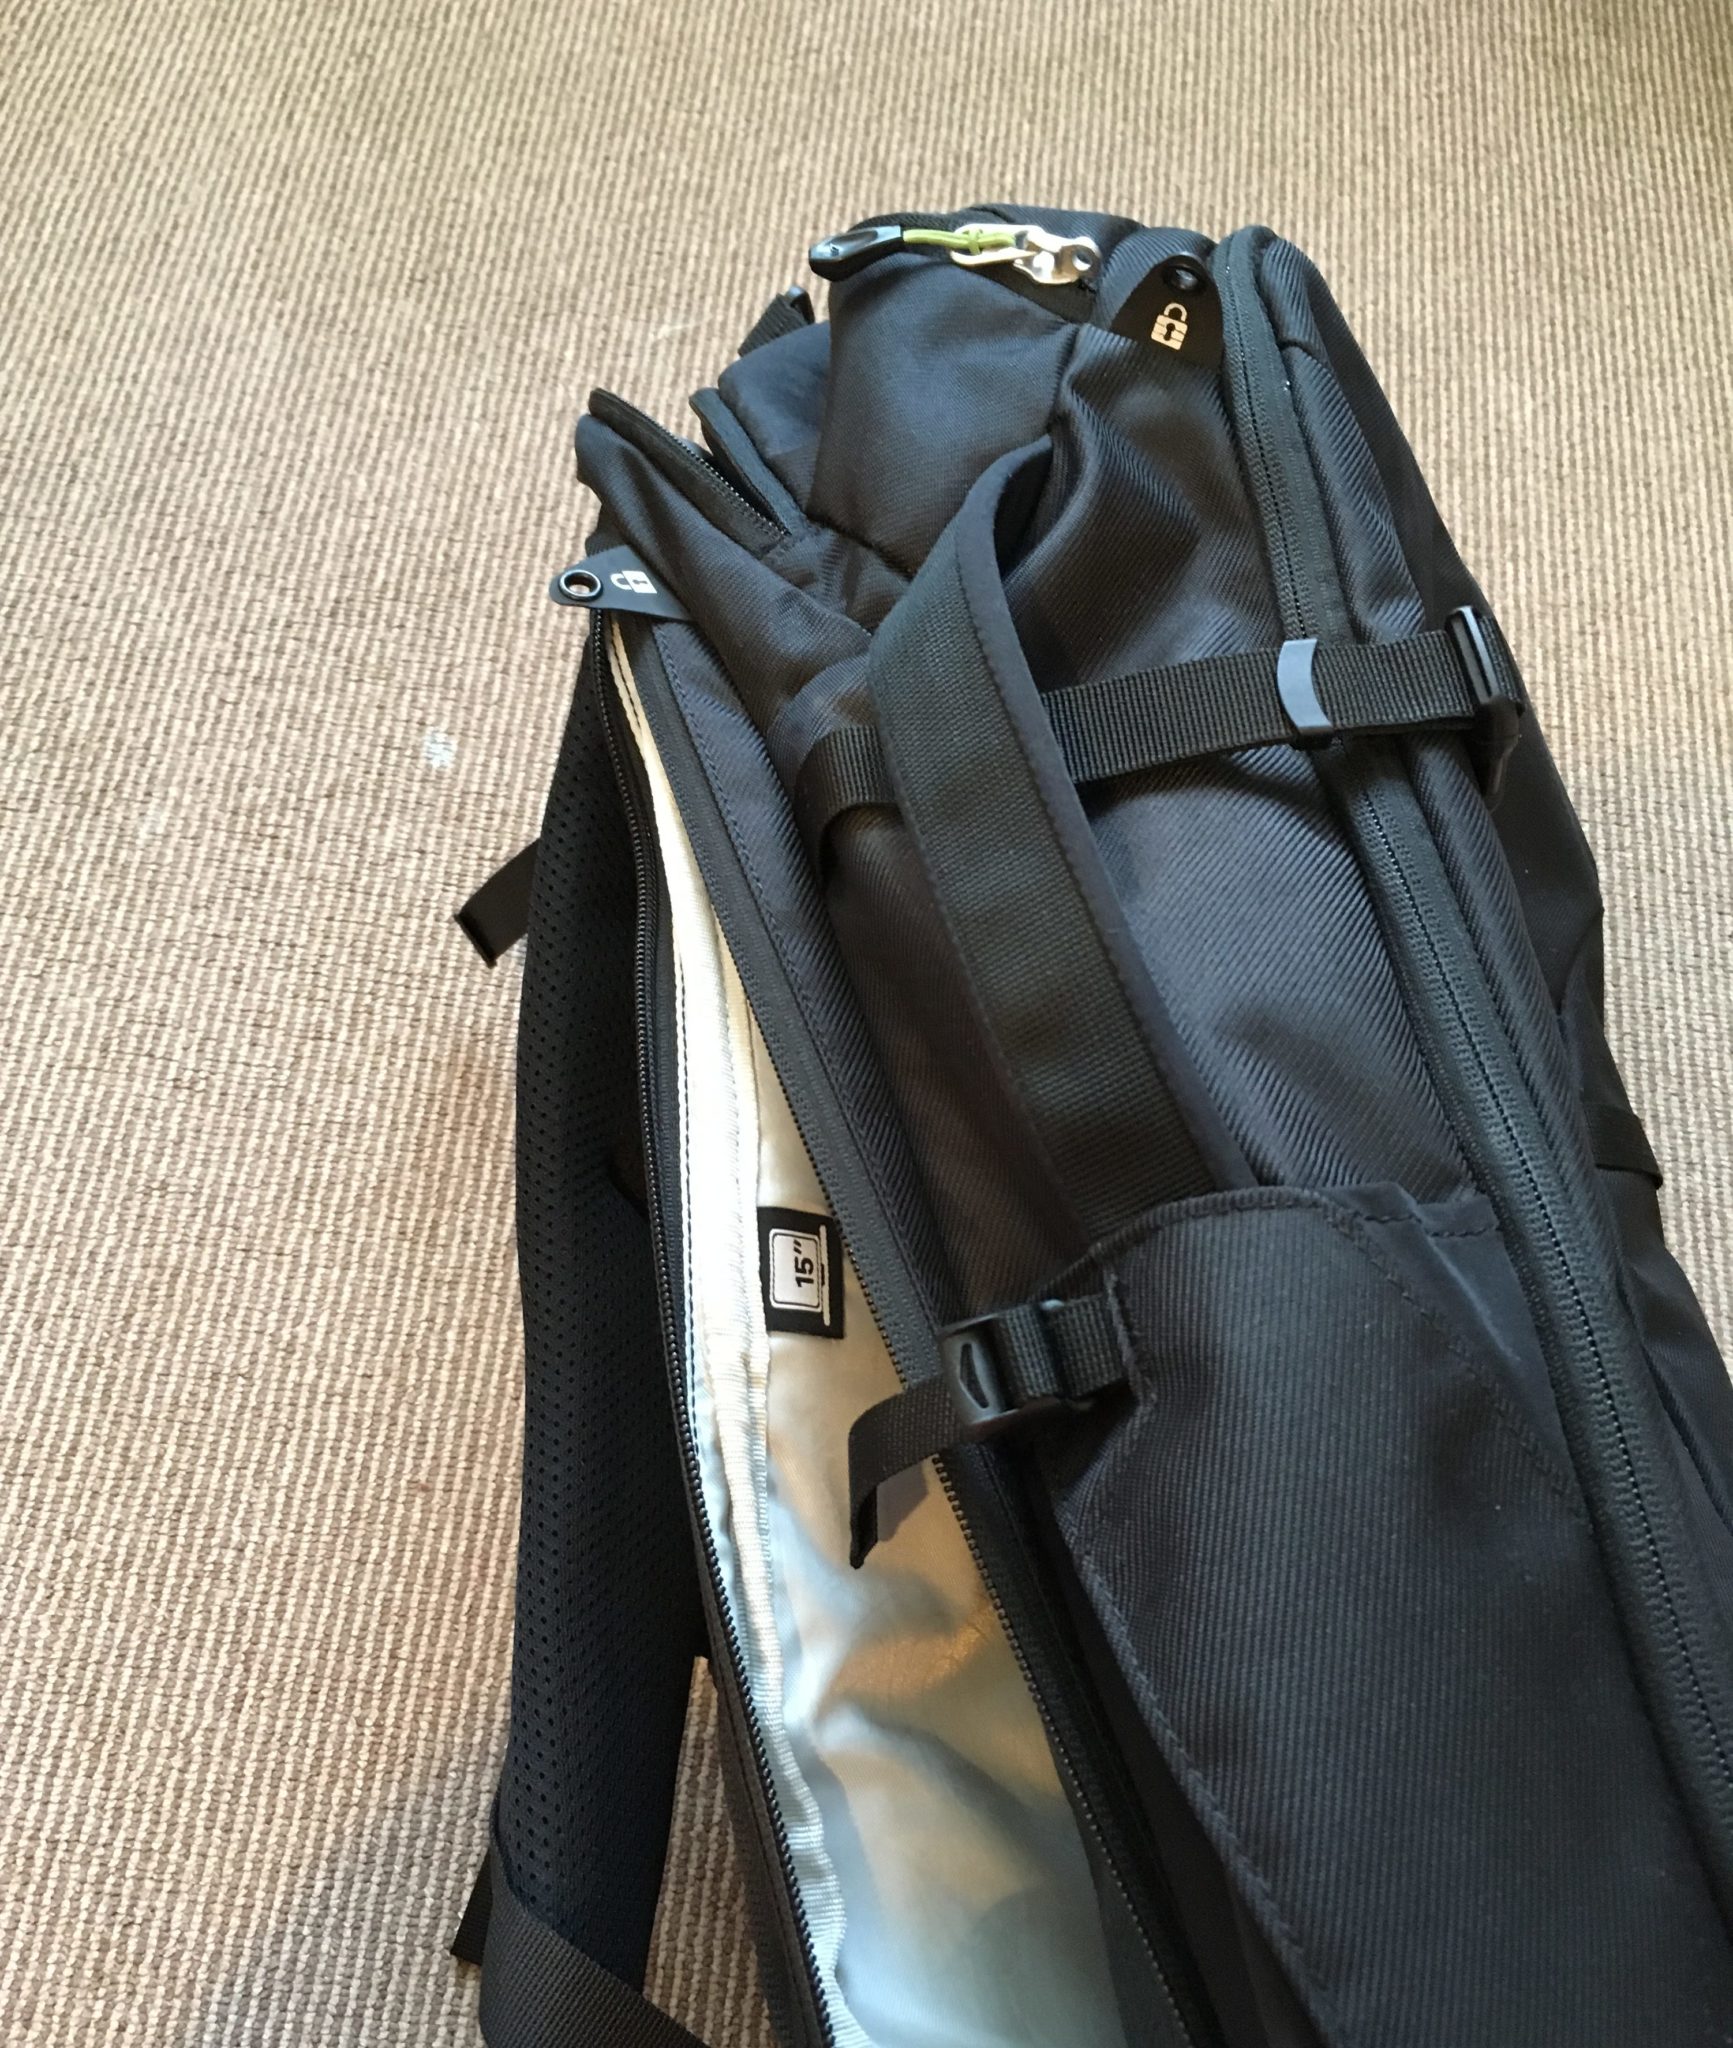 The back laptop pocket on a black Kathmandu Litehaul 38L Backpack